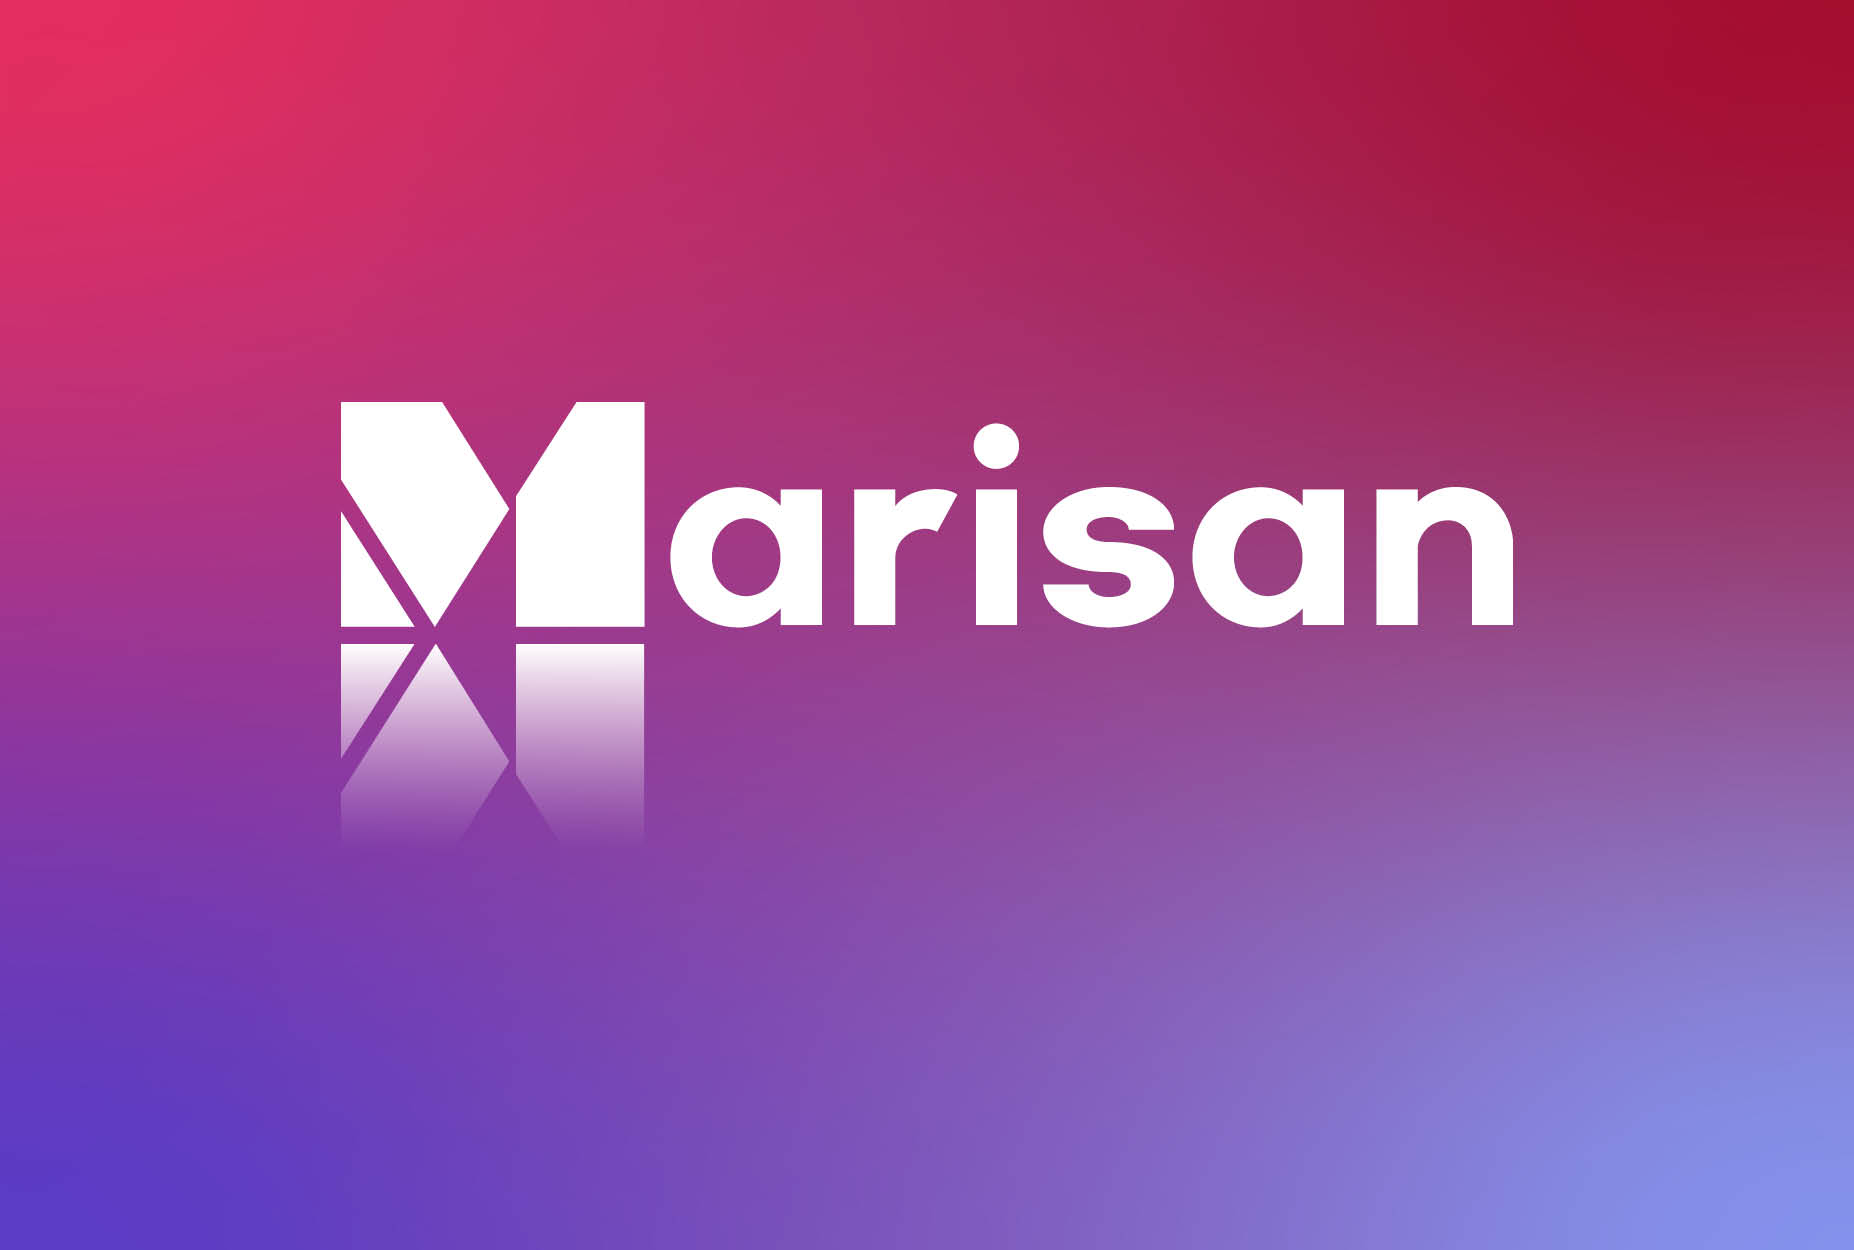 Welkom bij het nieuwe Marisan: vernieuwd, opgefrist en klaar voor de toekomst!